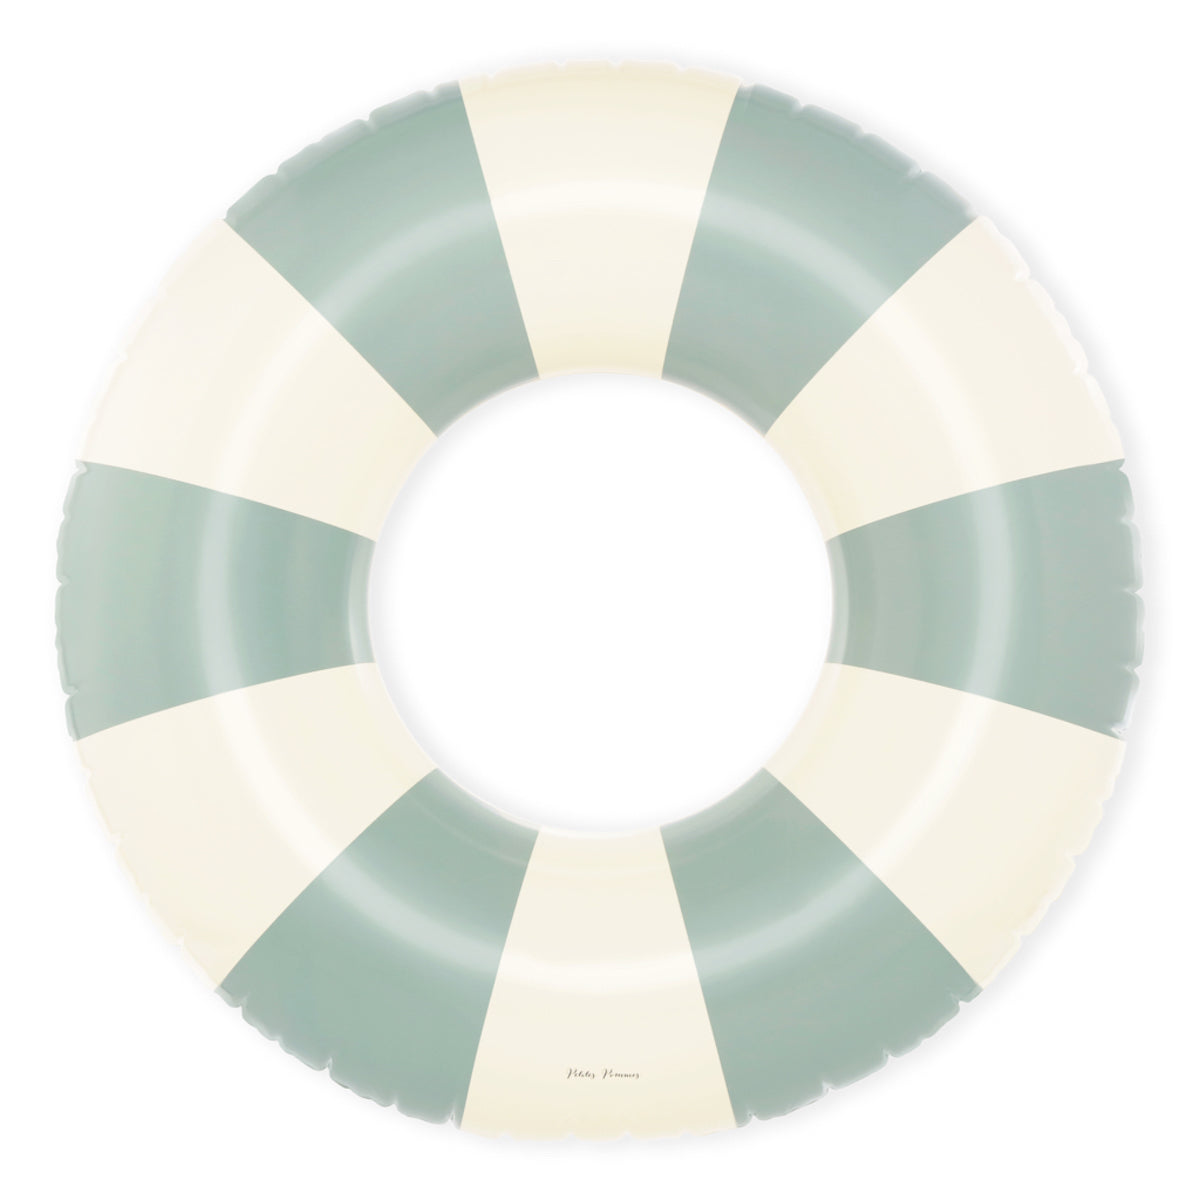 De Petites Pommes Celine zwemband in de kleur Calile (groen) is een opblaasbare zwemband met een diameter van 120cm. Deze grandfloat heeft een leuk en kleurrijk ontwerp in een streep design. VanZus